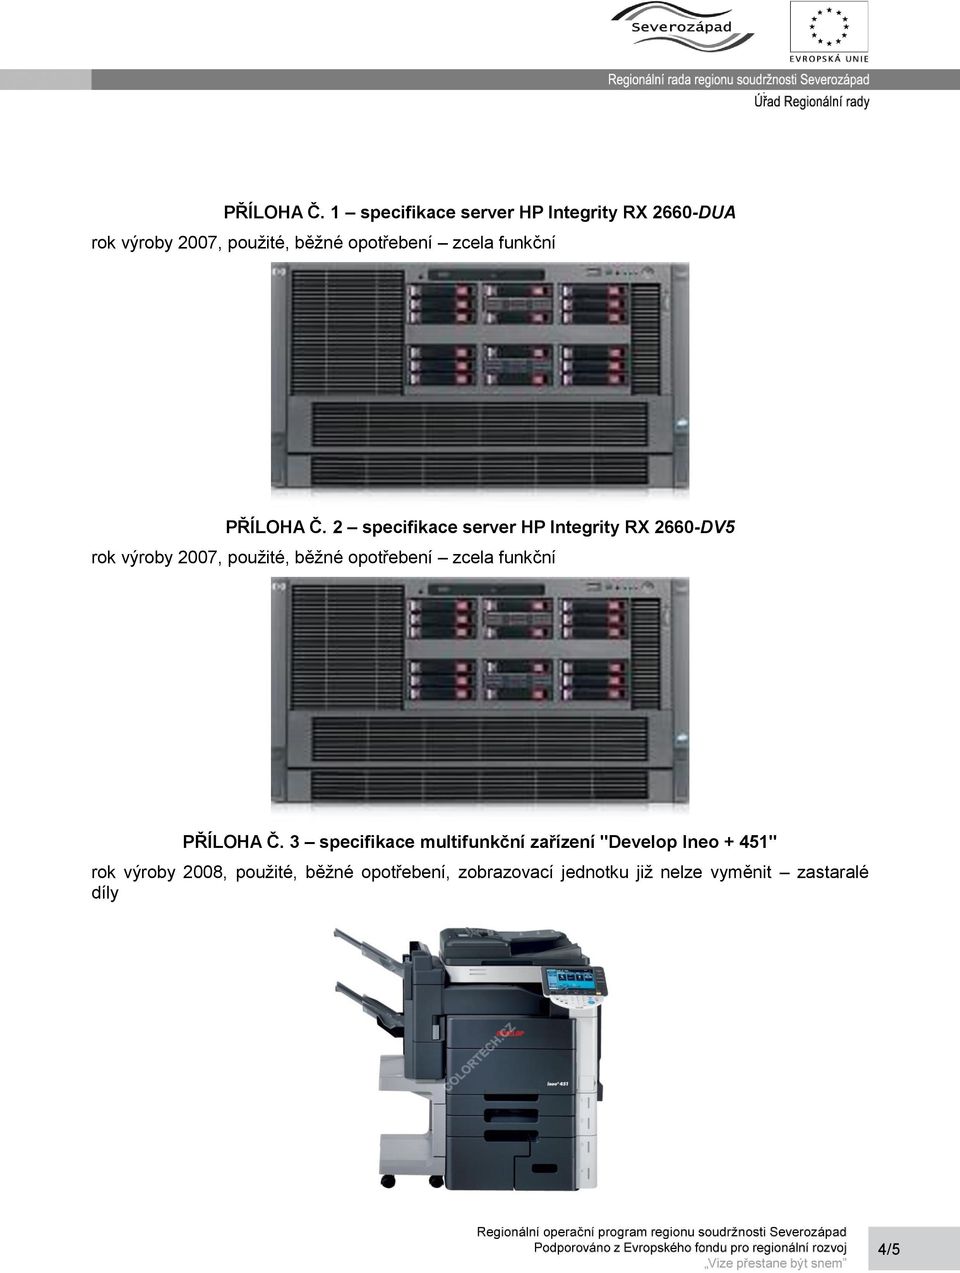 funkční  2 specifikace server HP Integrity RX 2660-DV5 rok výroby 2007, použité, běžné opotřebení